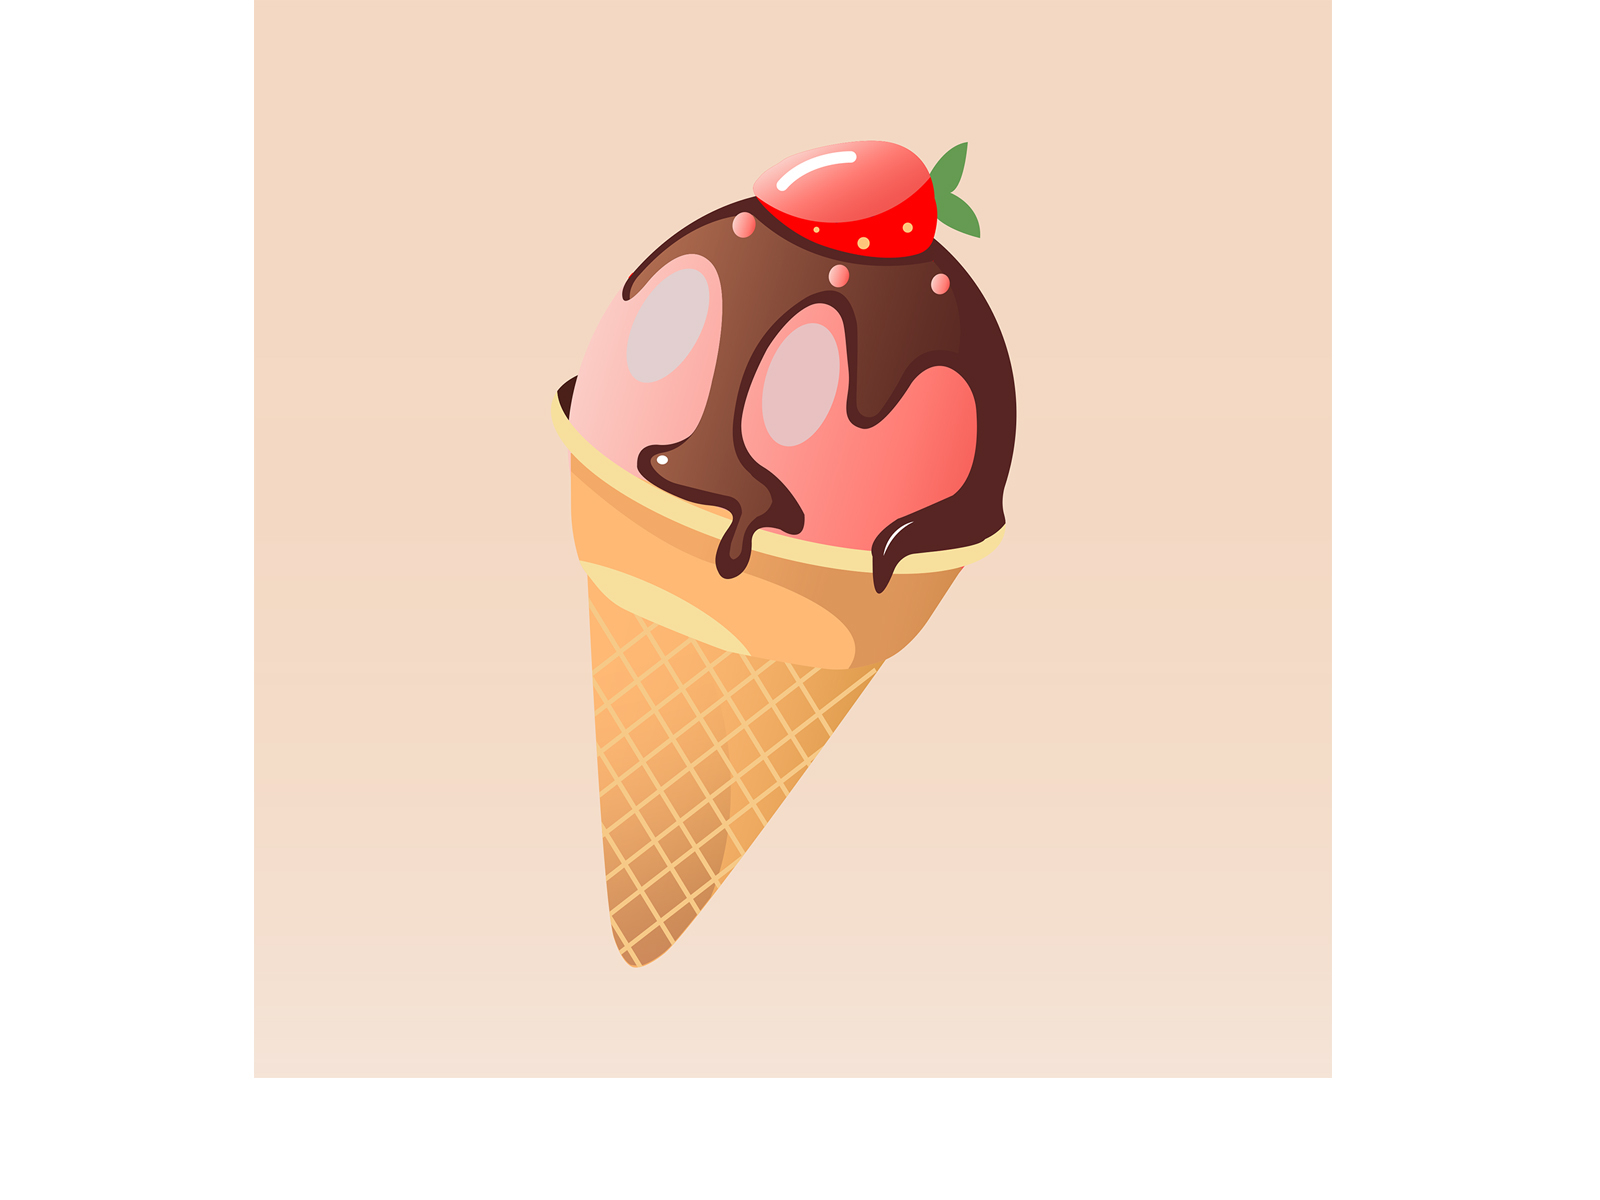 мороженое в вафельном стакане design illustration vector еда мороженое